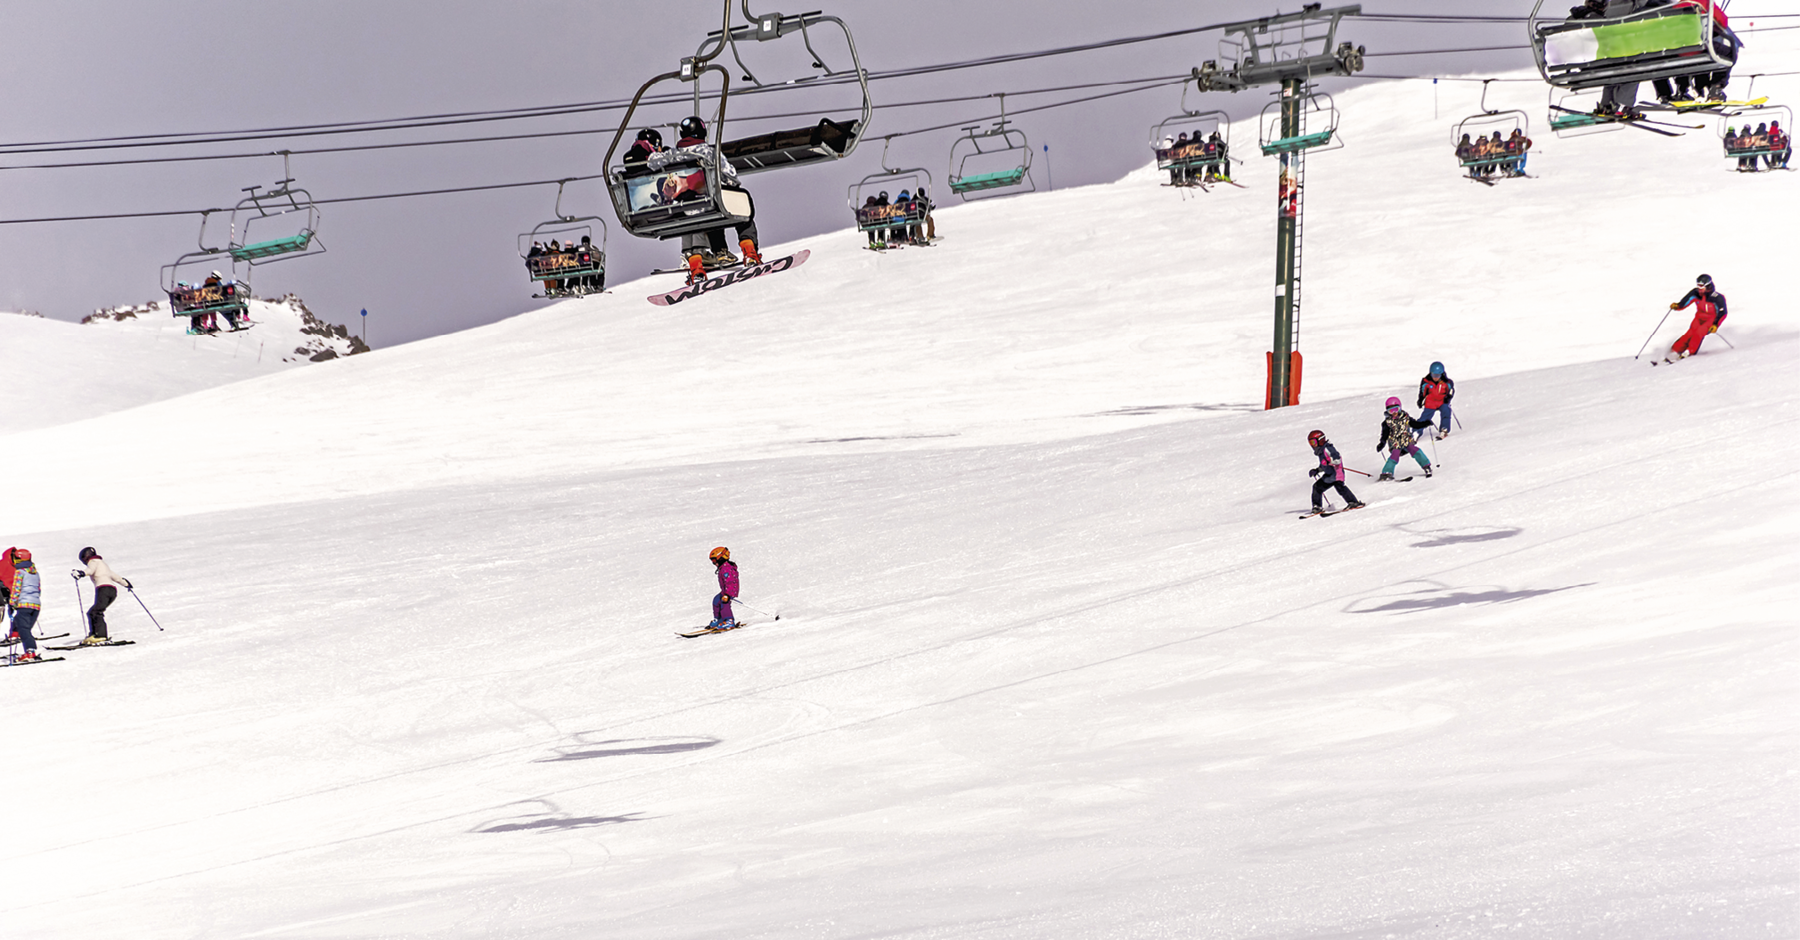 Fotografia. Vista de pessoas, sobretudo crianças, esquiando sobre a neve em um terreno inclinado. Na parte superior, há teleféricos sendo utilizado por outras pessoas.